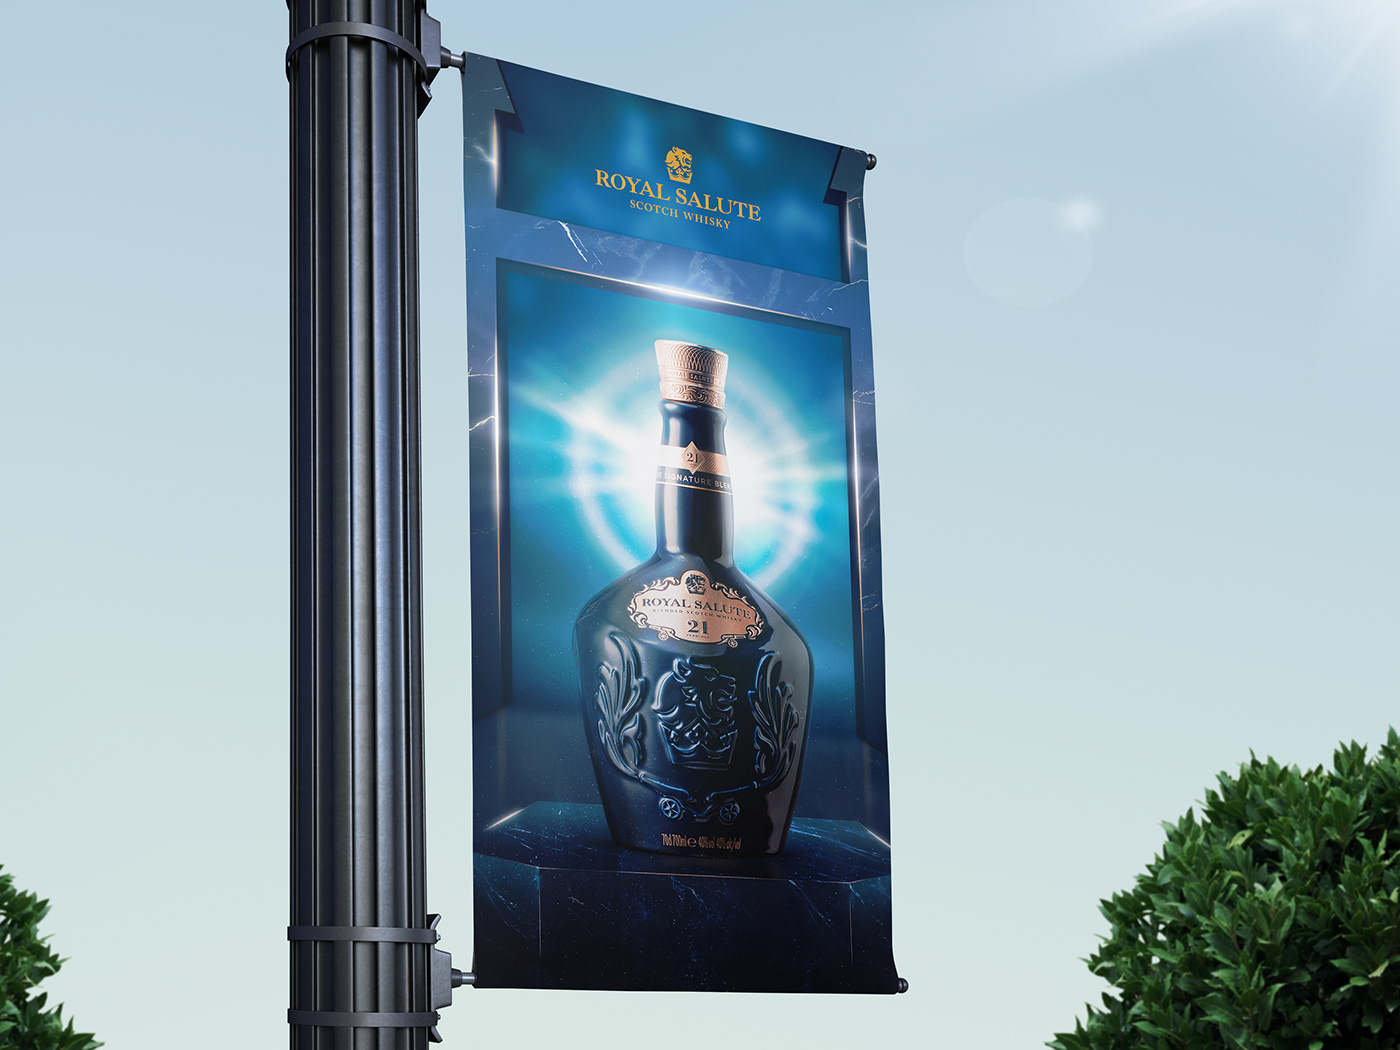 Whisky drink social media Manipulação de imagem Royal Salute alcohol Advertising  bebida Whiskey campaign